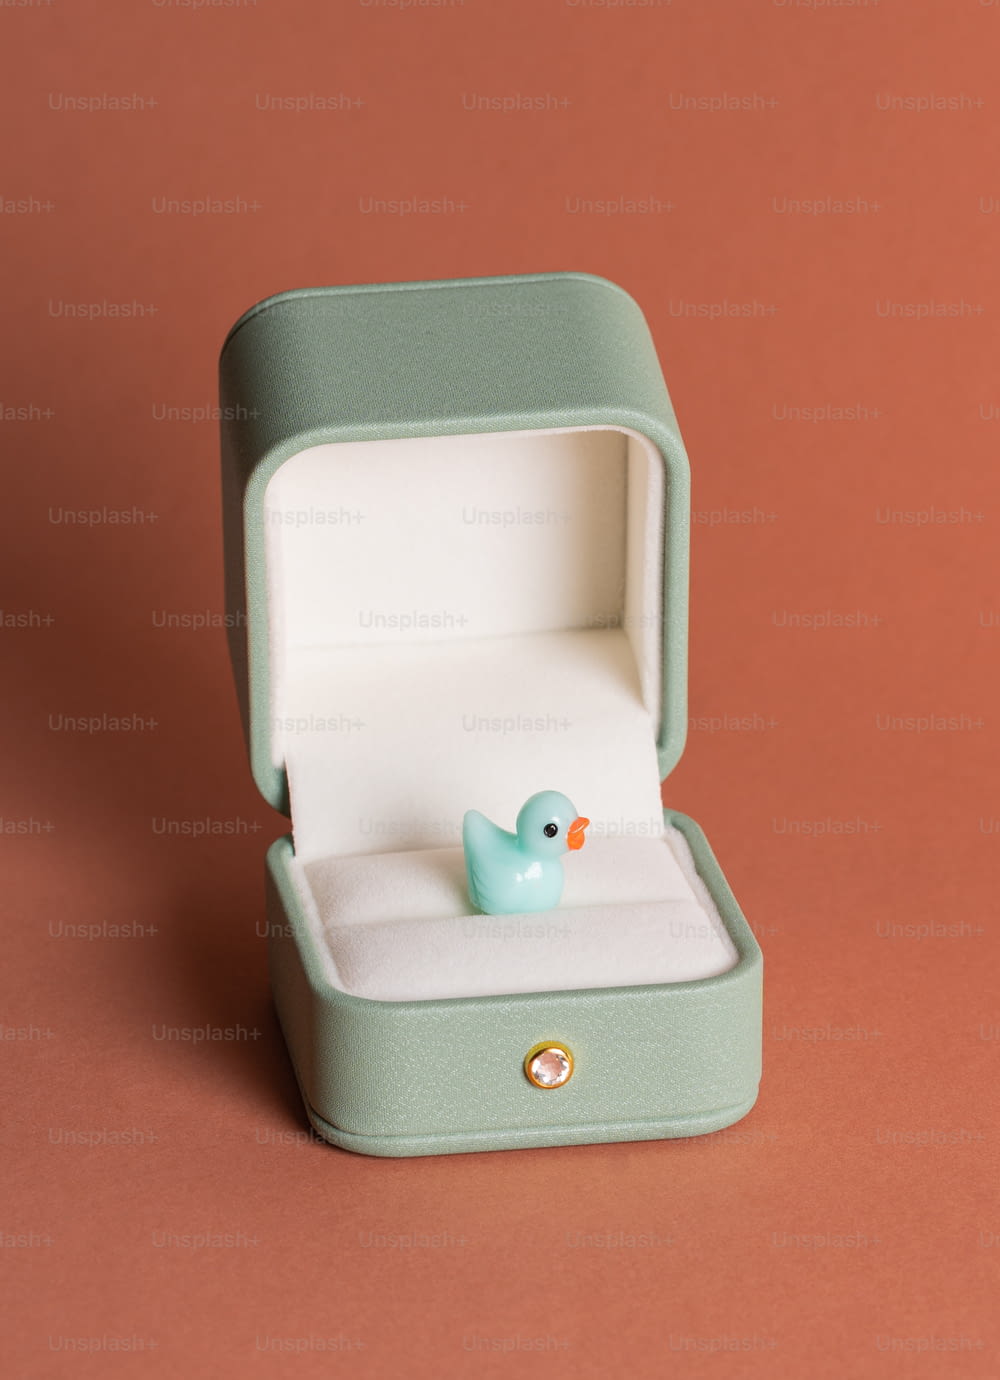 um pequeno pato de borracha azul em uma caixa verde